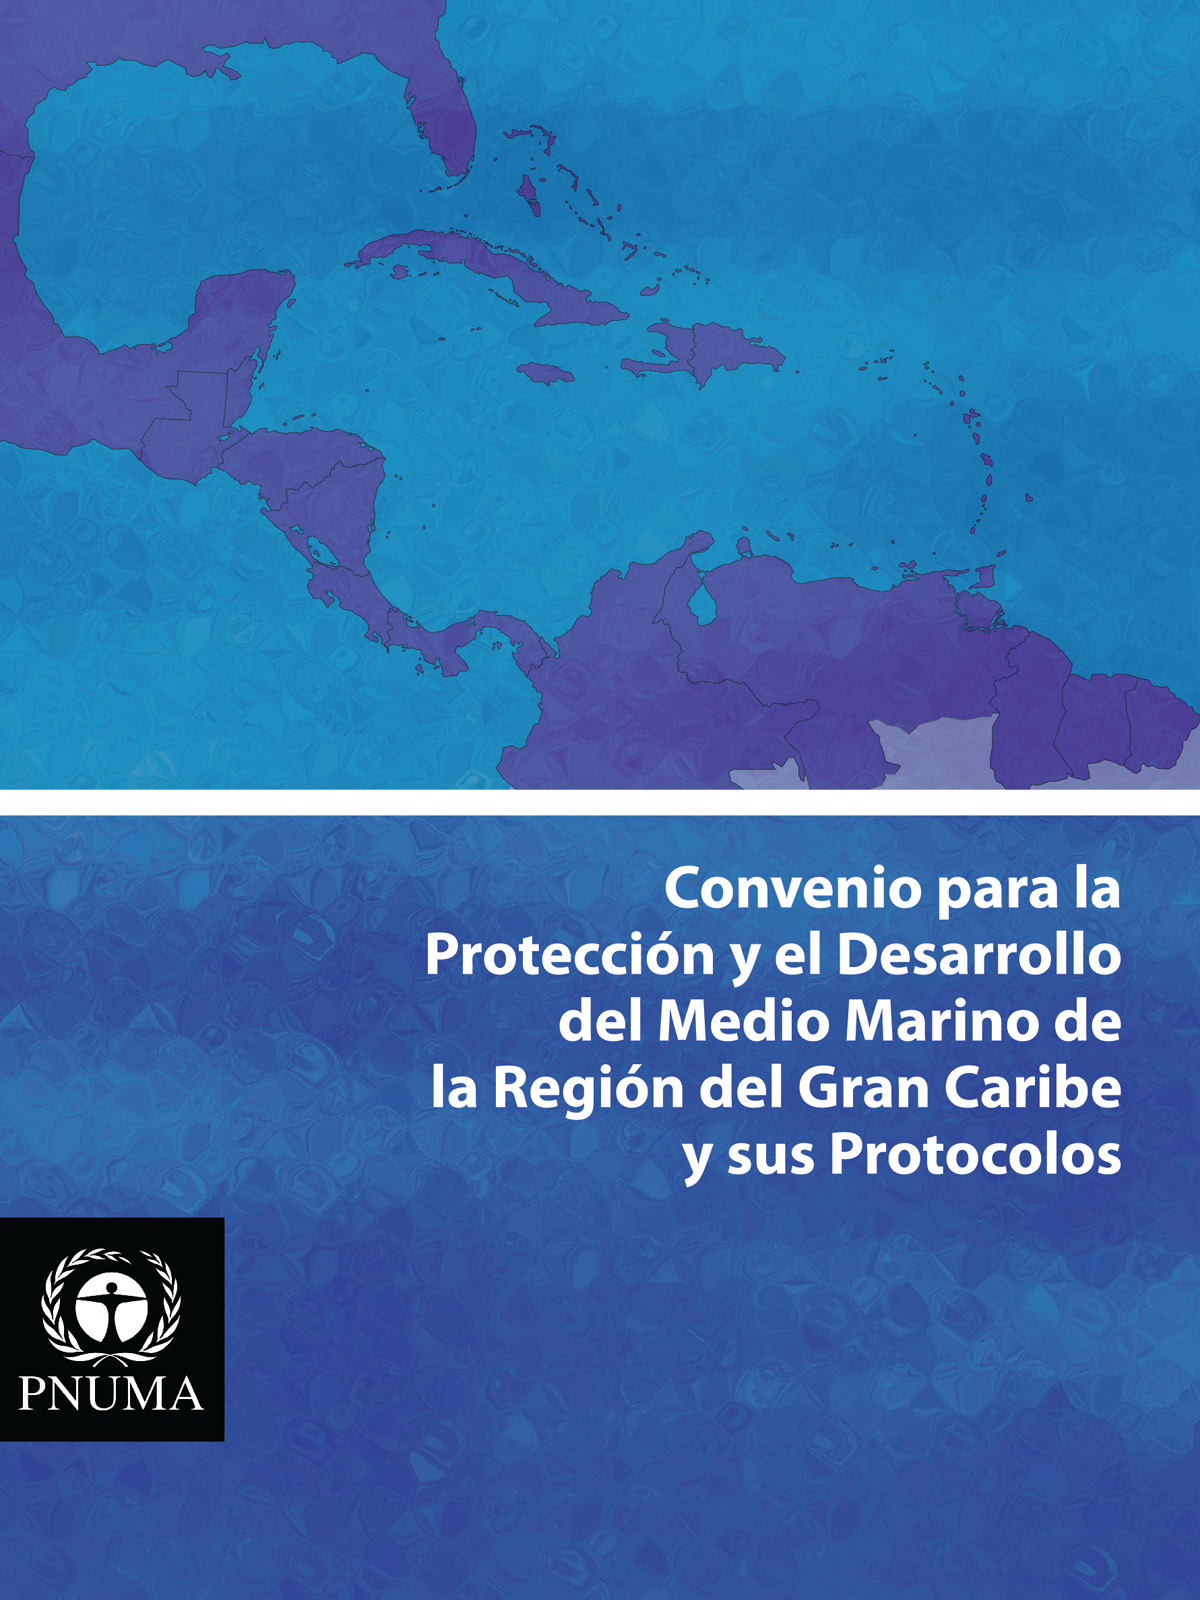 Texto del Convenio de Cartagena y sus Protocolos